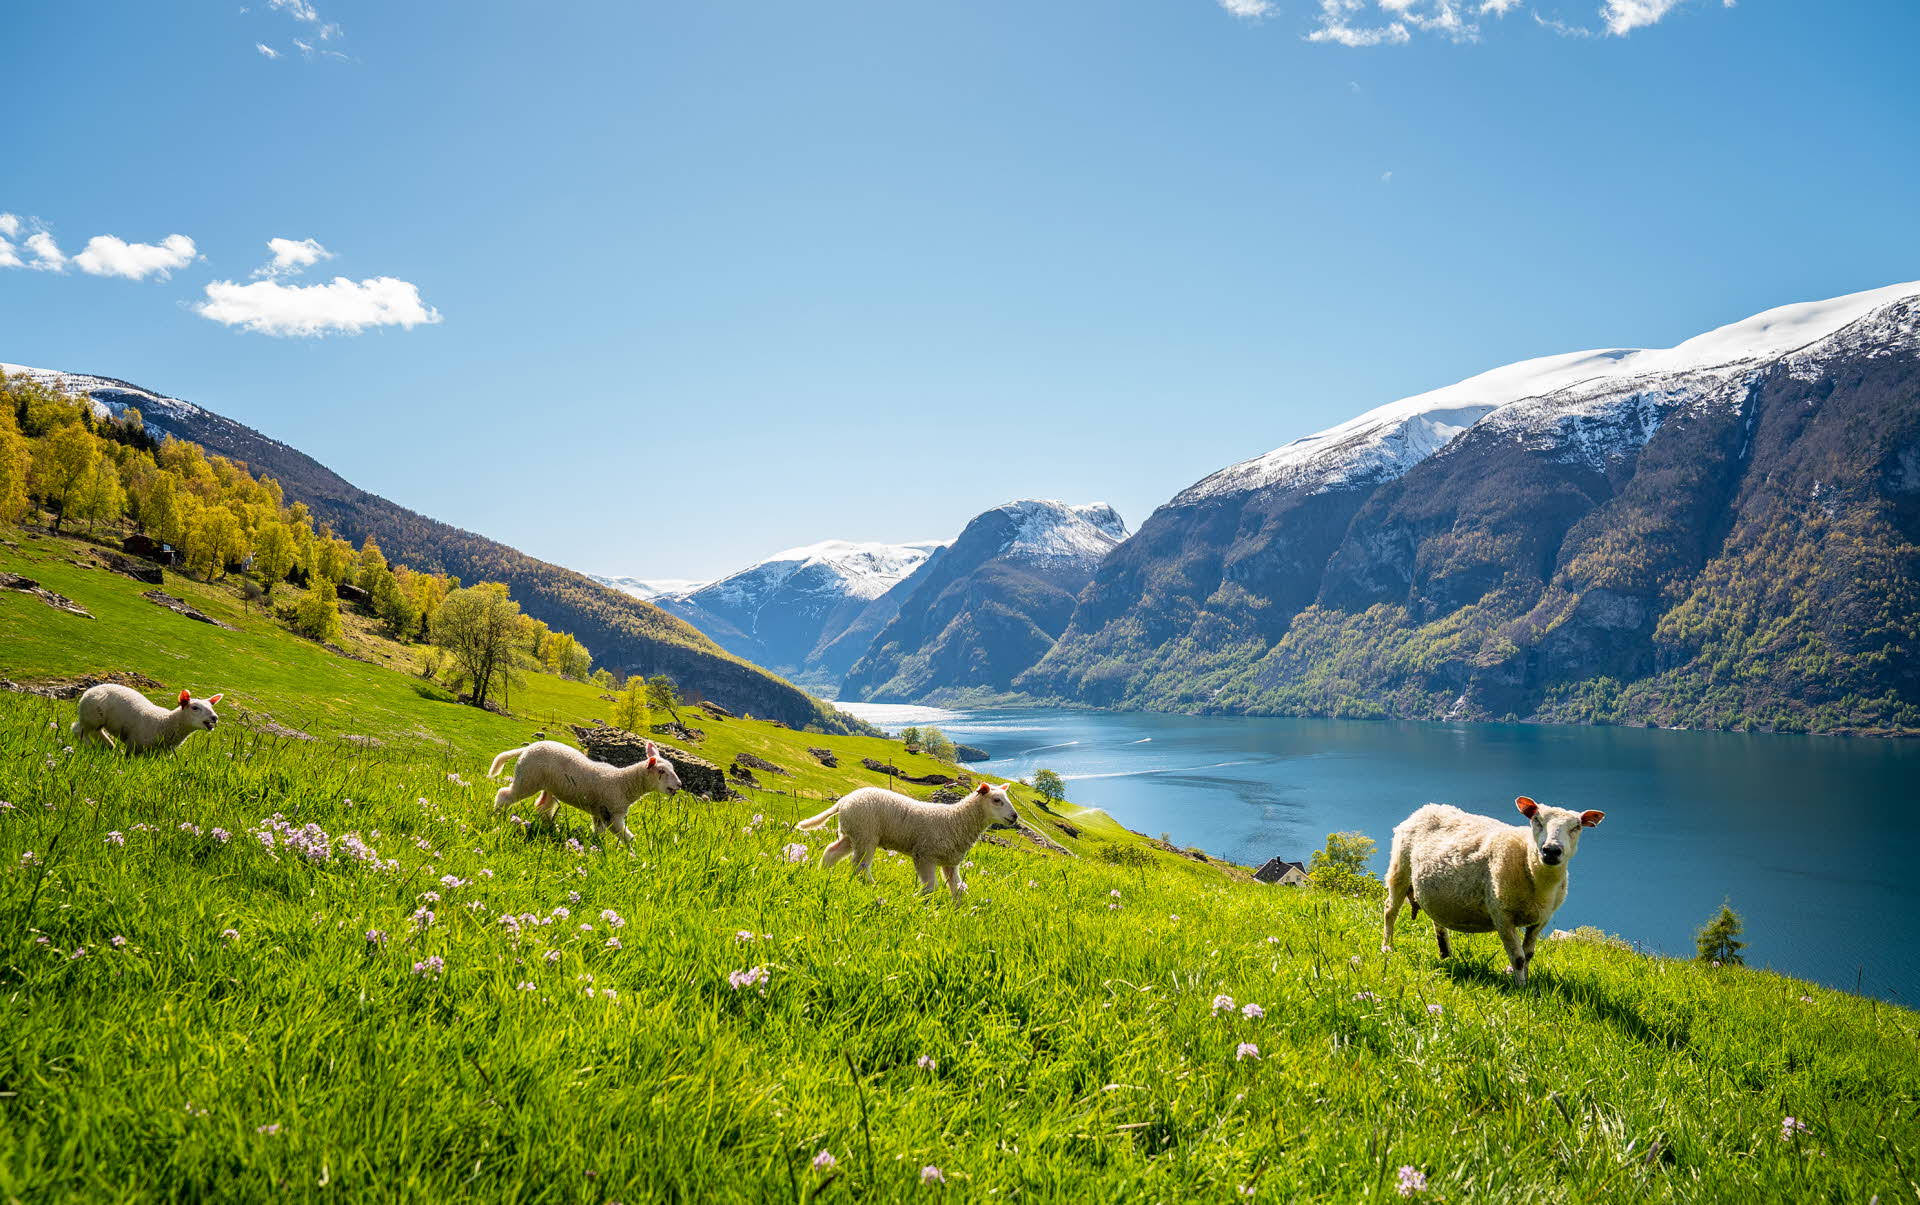 Des moutons paissant dans une prairie en fleurs avec vue sur l’Aurlandsfjord, inscrit au patrimoine mondial de l’UNESCO, avec des sommets enneigés à l’arrière-plan